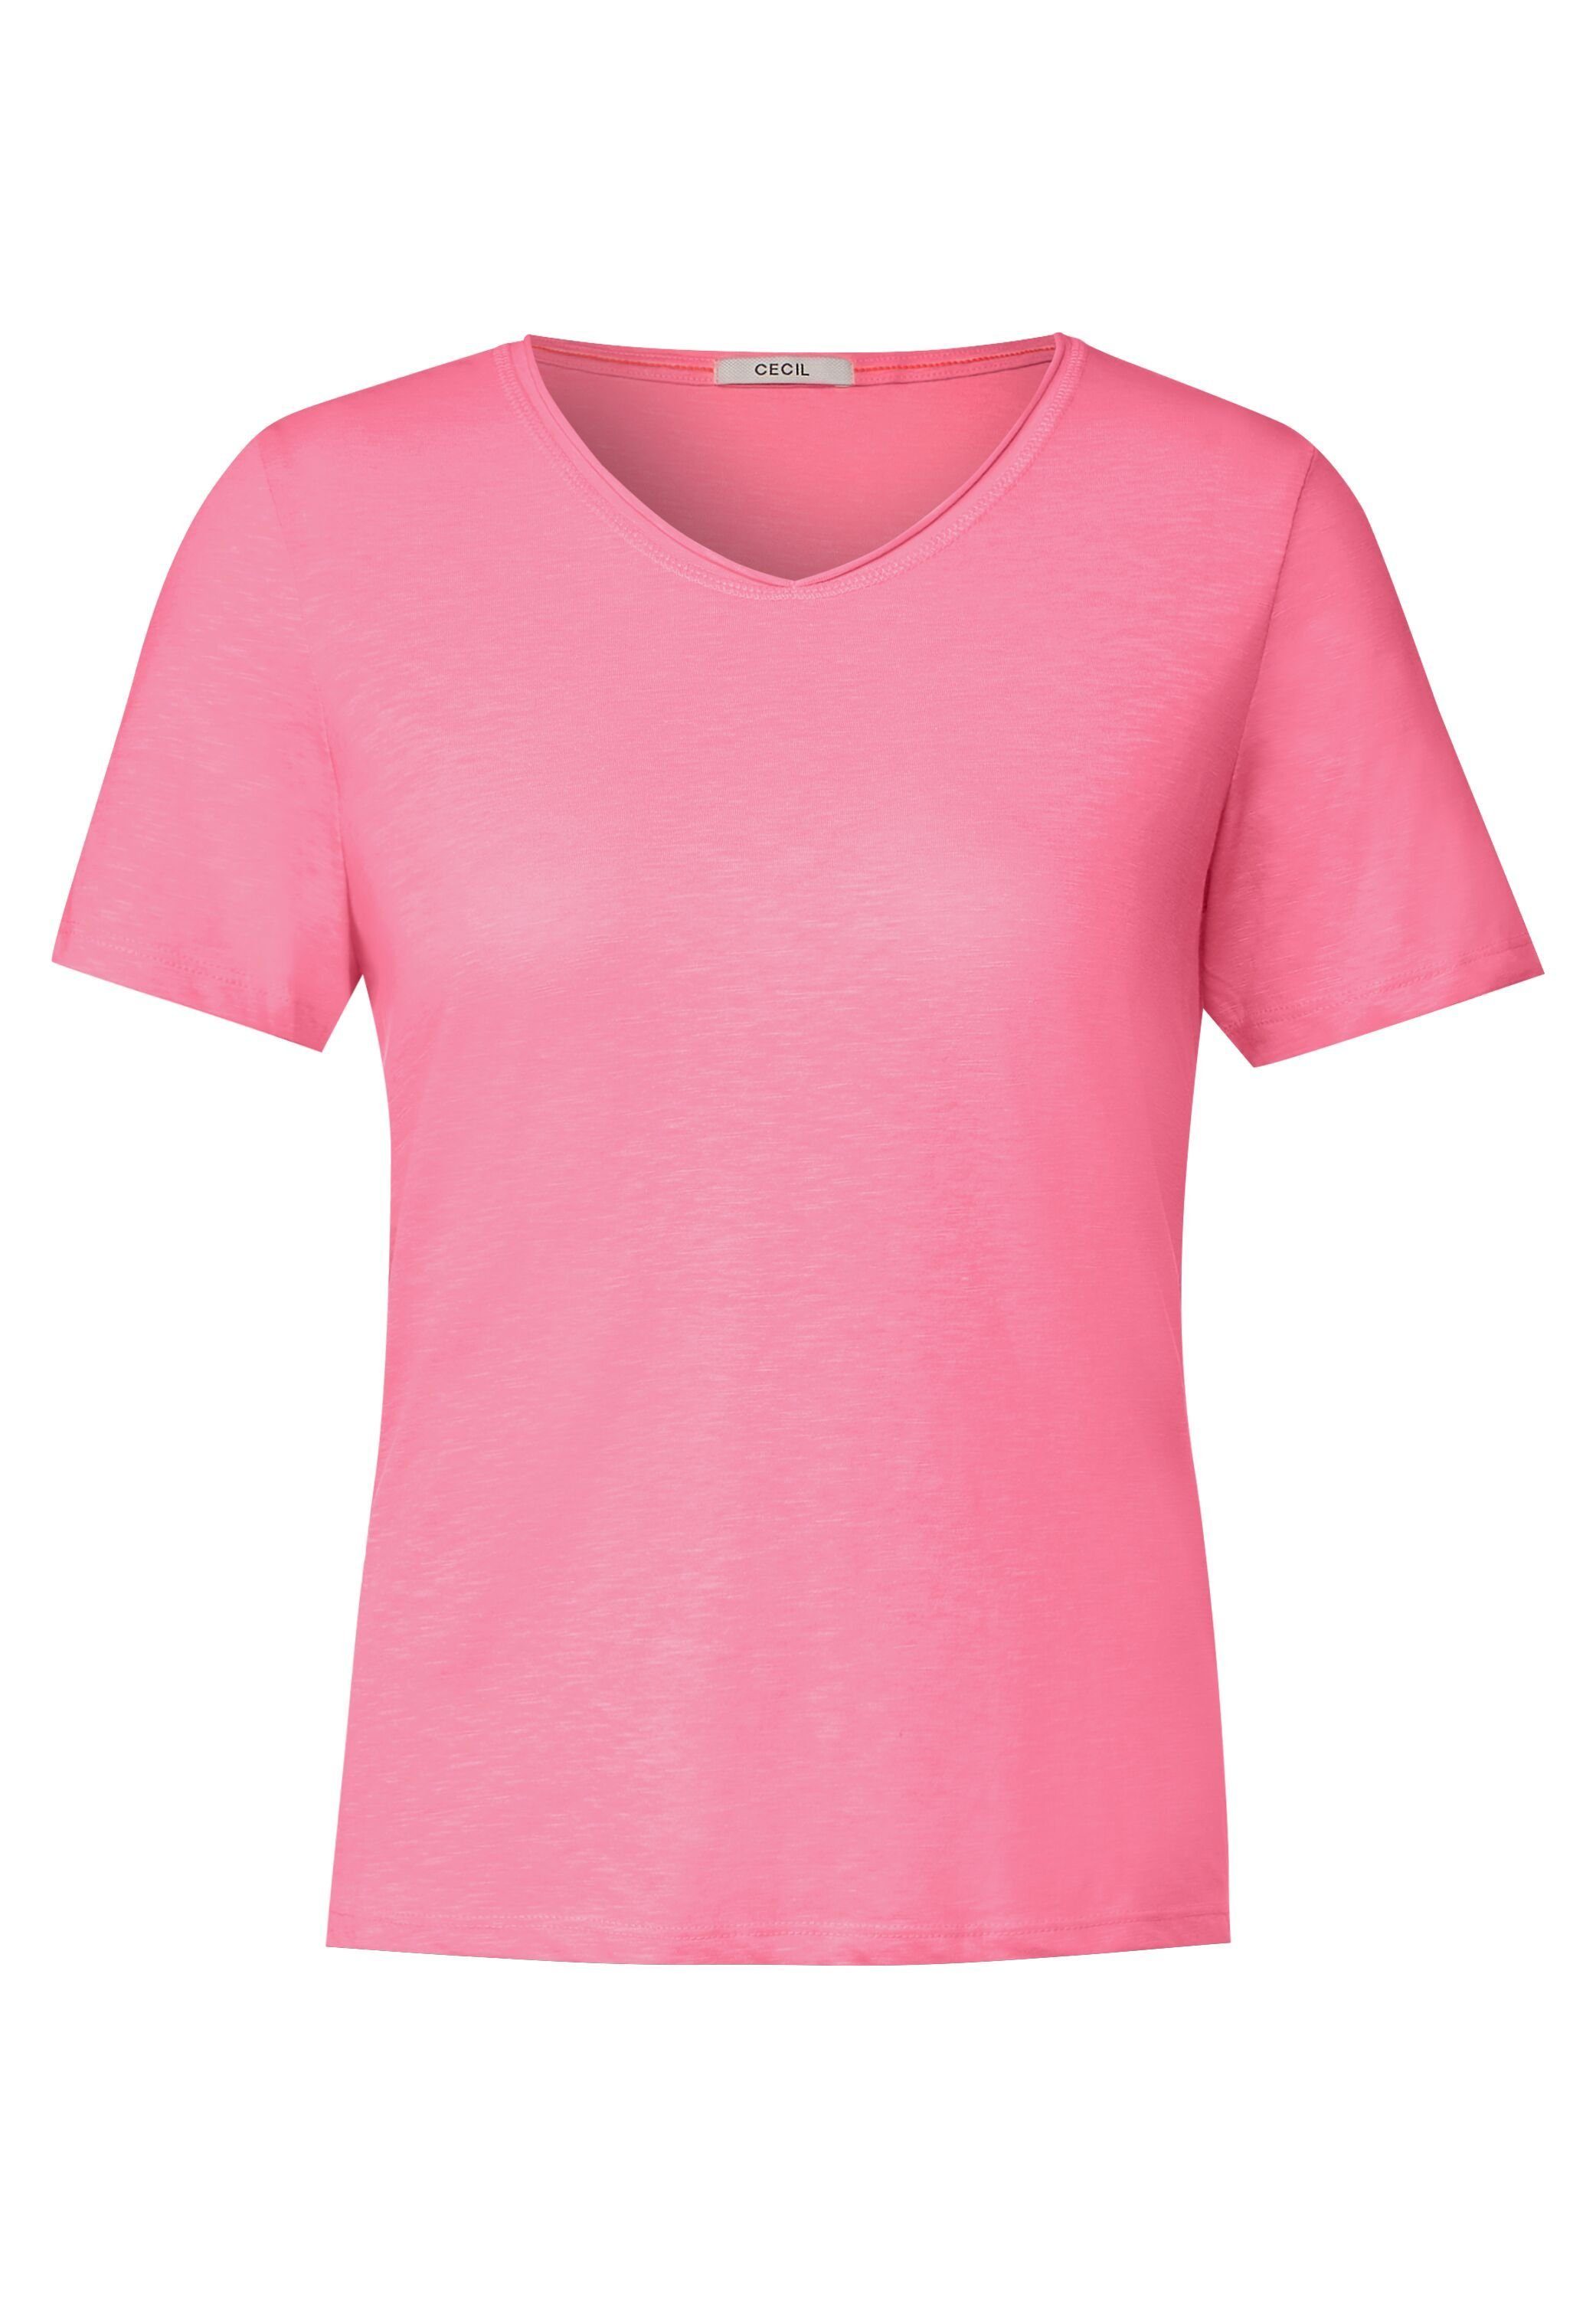 Cecil Kurzarmshirt soft pink